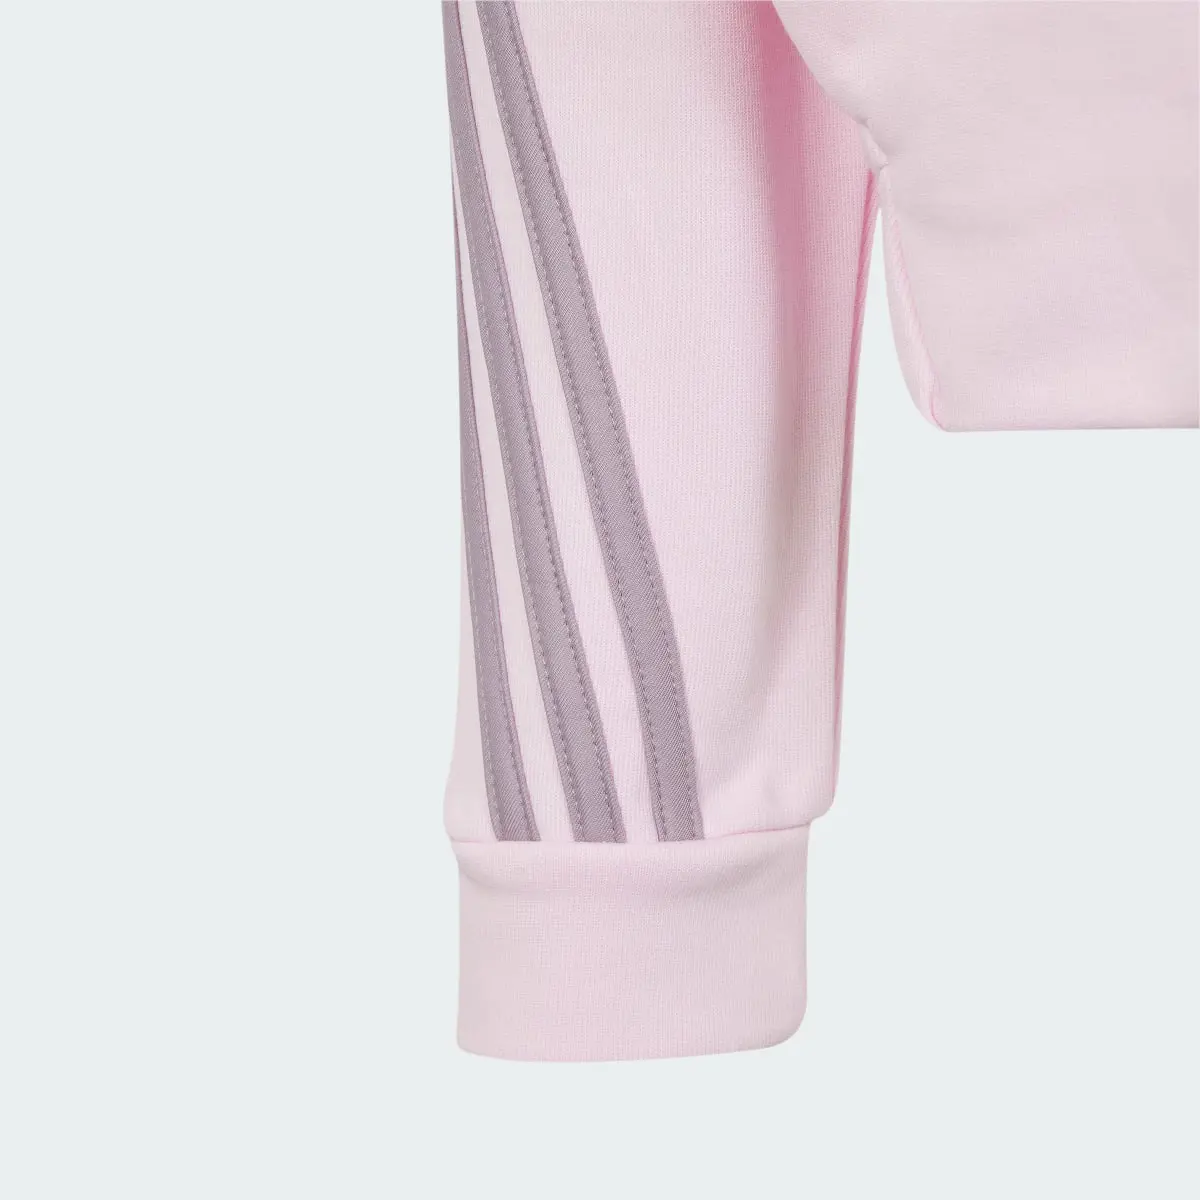 Adidas Future Icons 3-Streifen Kapuzenjacke. 3